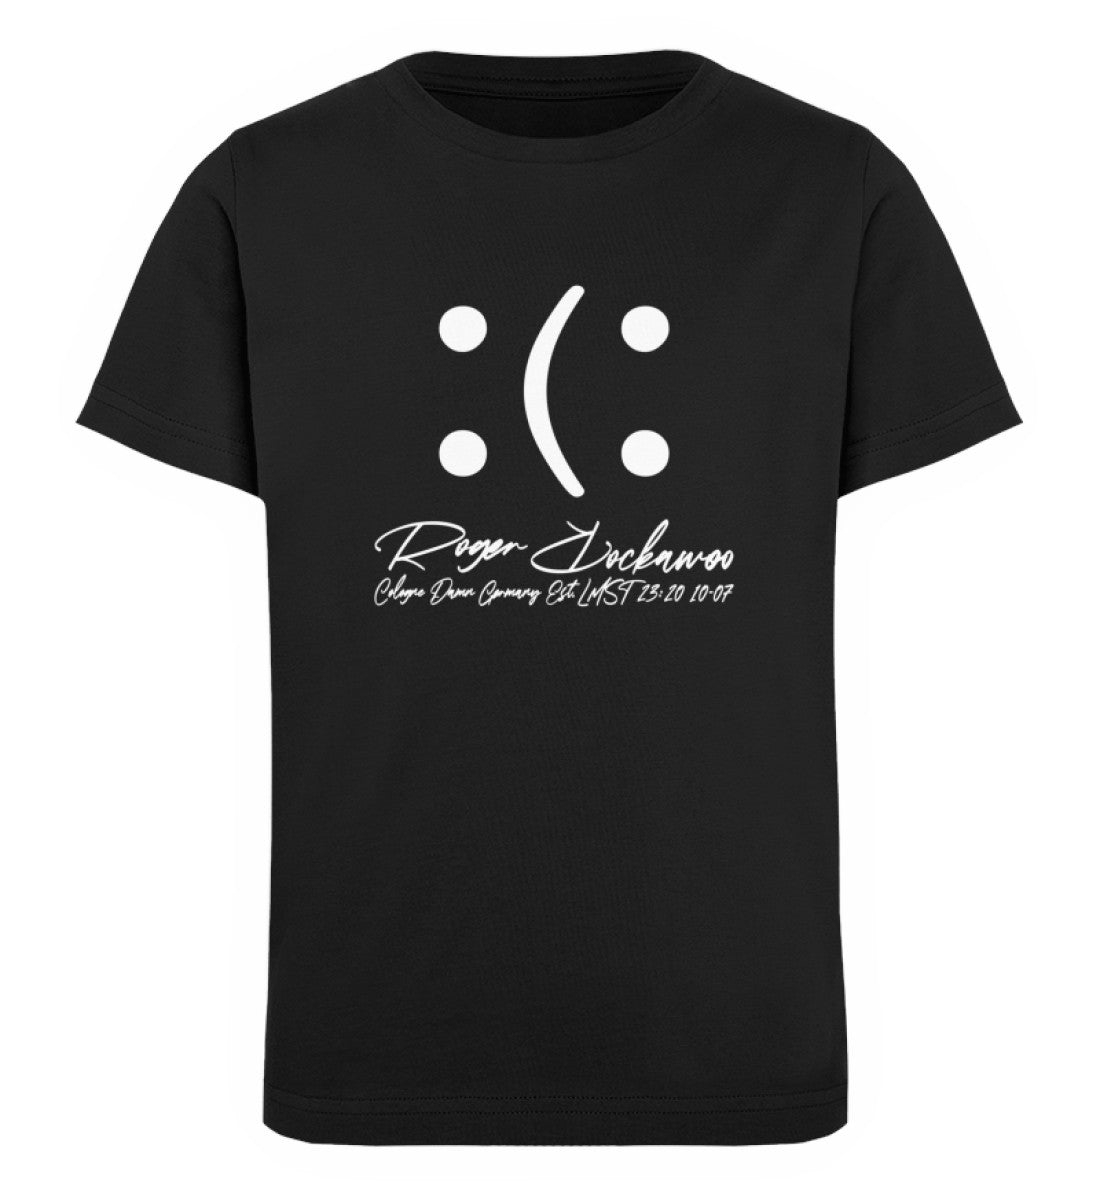 Schwarzes T-Shirt Unisex für Kinder rückseitig bedruckt in weiß mit dem Design der You Decide Kollektion und dem Logo Schriftzug von Roger Rockawoo Clothing